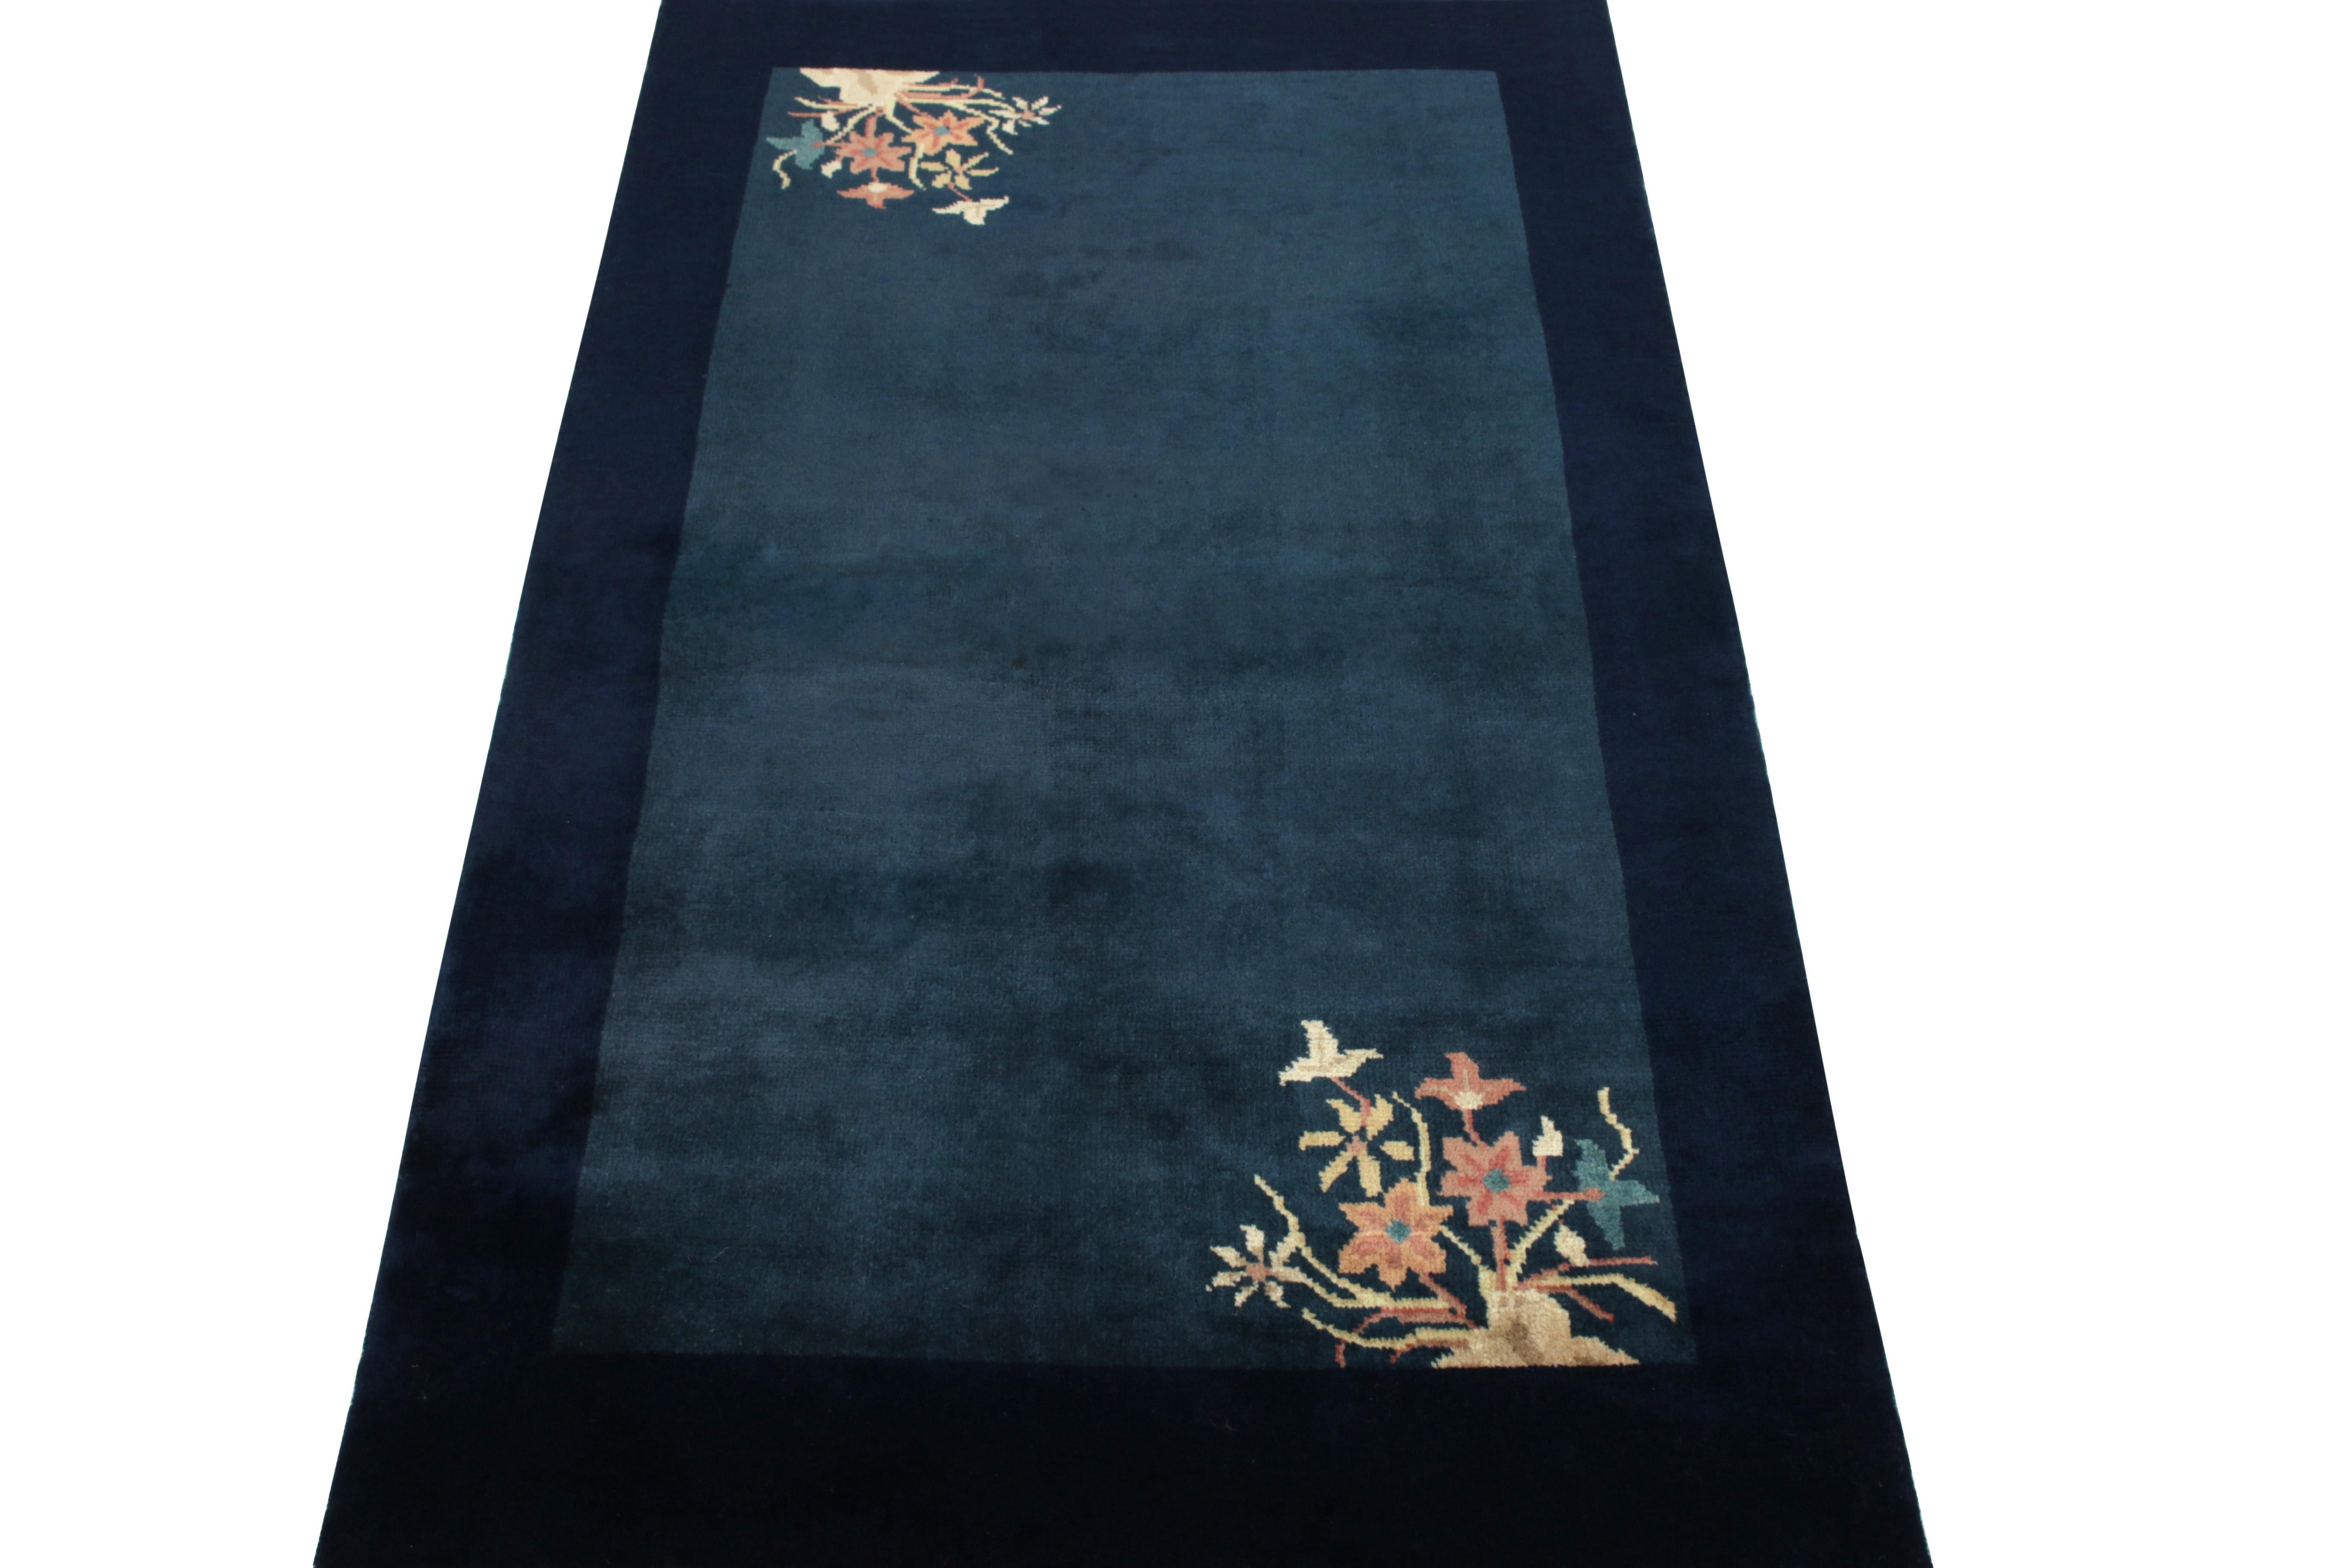 Inspiriert vom ehrwürdigen Stil der 1920er Jahre, zeigt dieser 3x3 Vintage-Teppich eine Ode an das chinesische Art Deco mit Blumen in Teal-, Mandarinenrot- und Gelbtönen in den diagonalen Ecken der inneren Bordüre, die den minimalistischen Ansatz